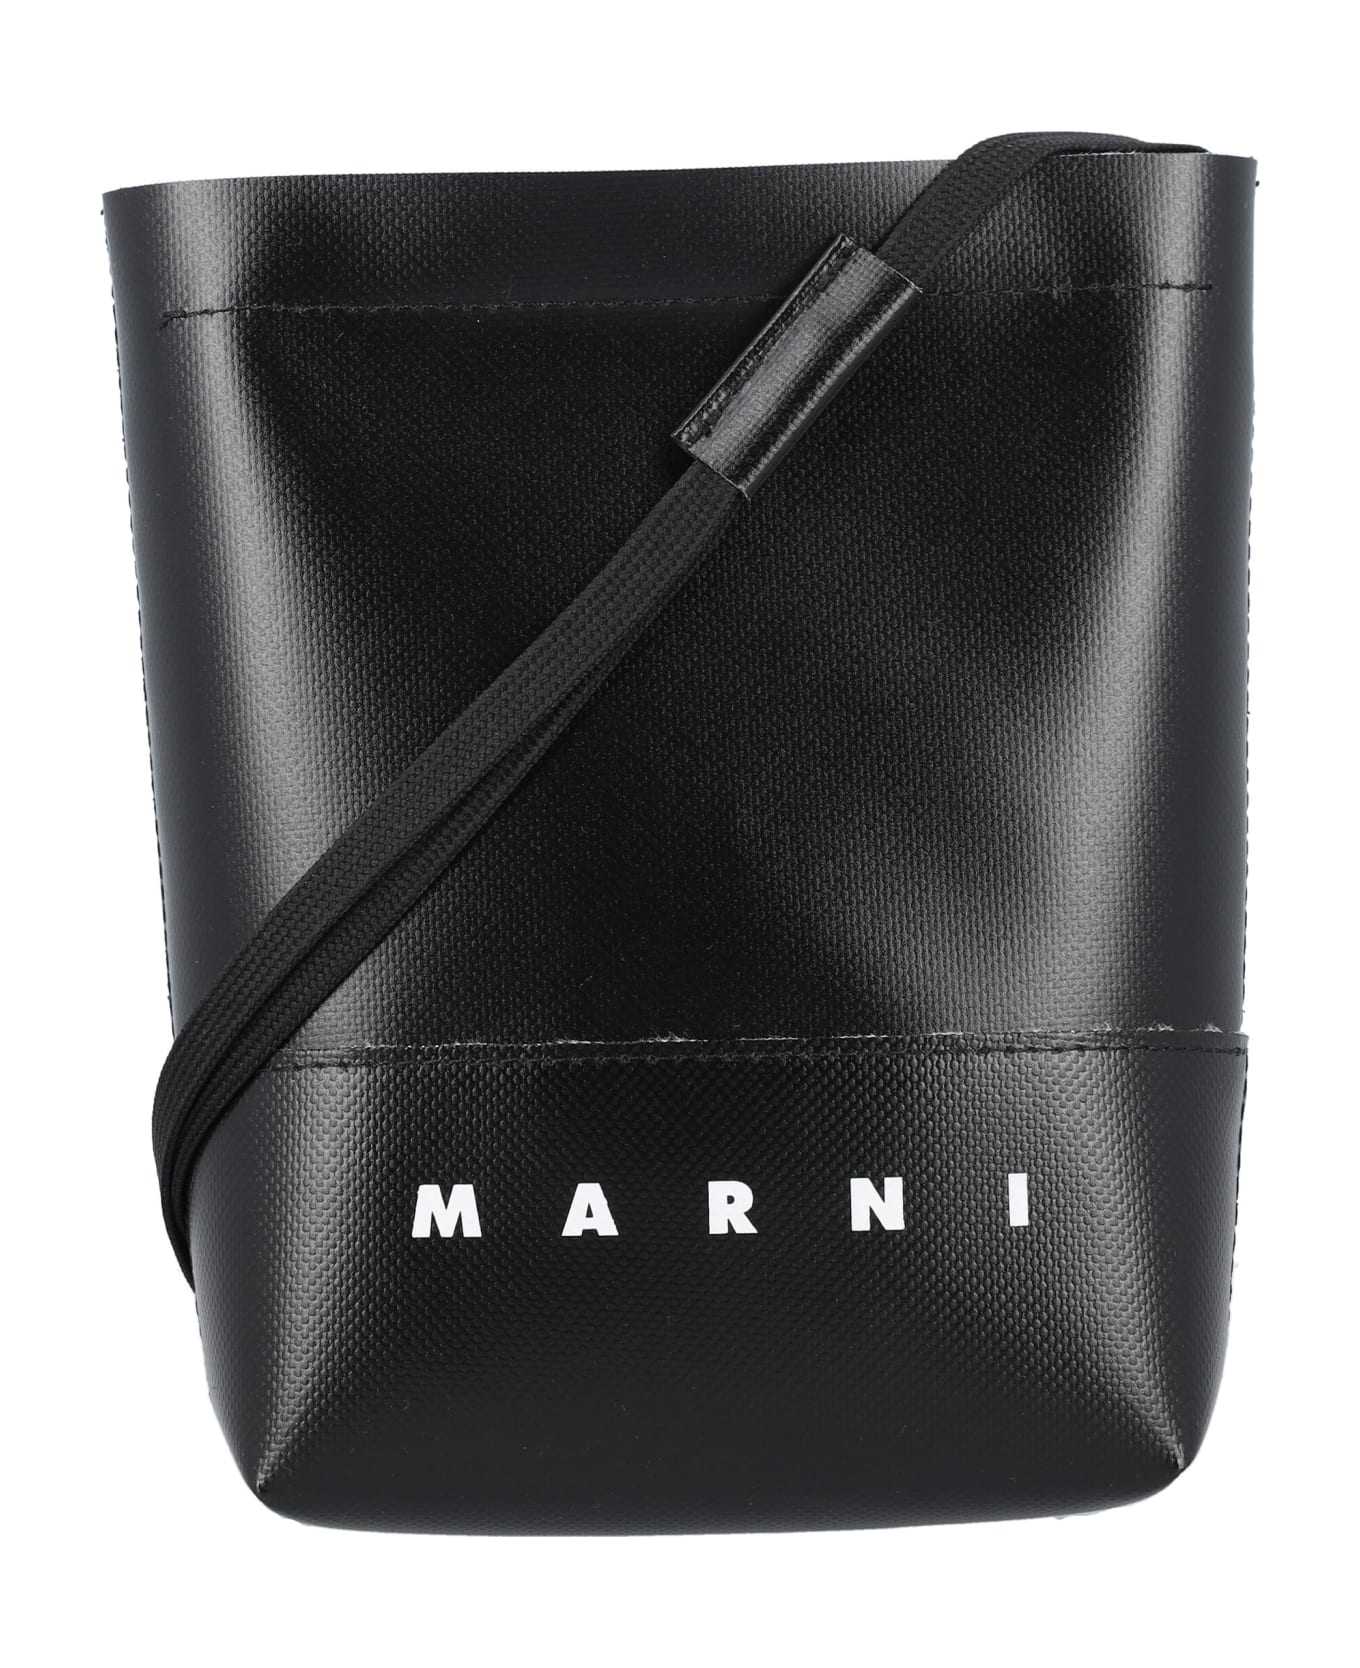 Marni Crossbody Bag - BLACK